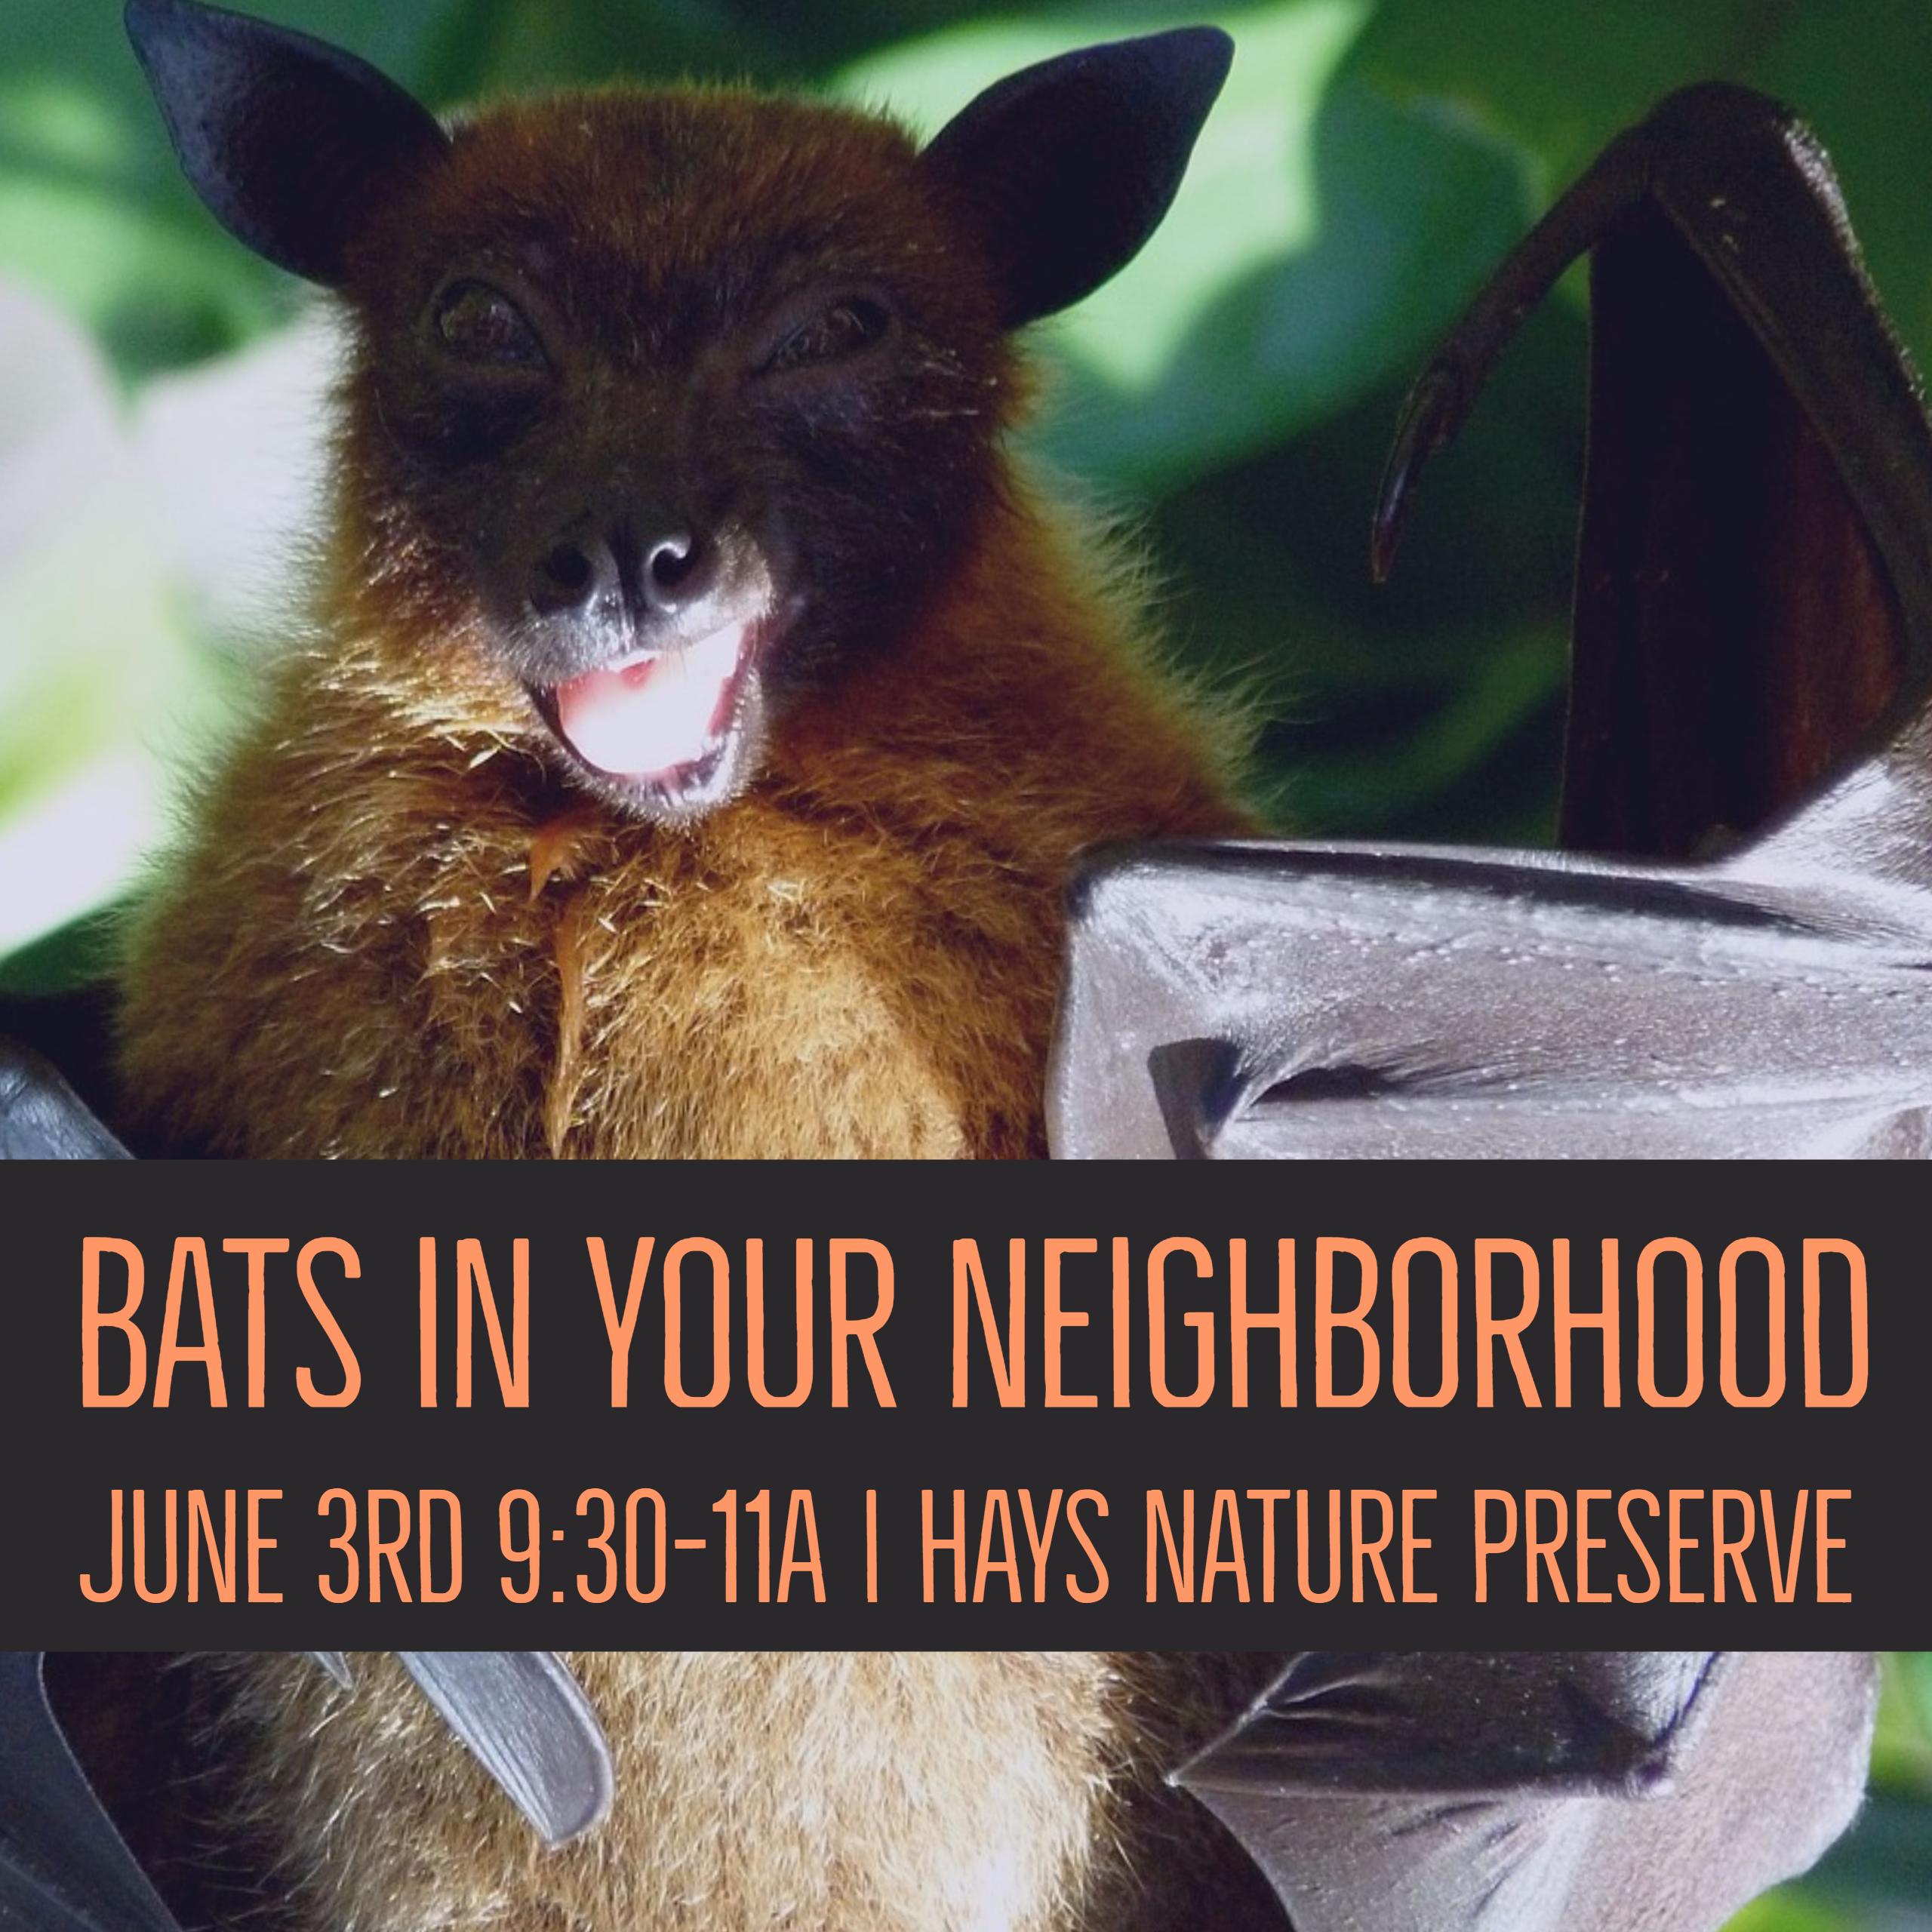 Neighborhood bats